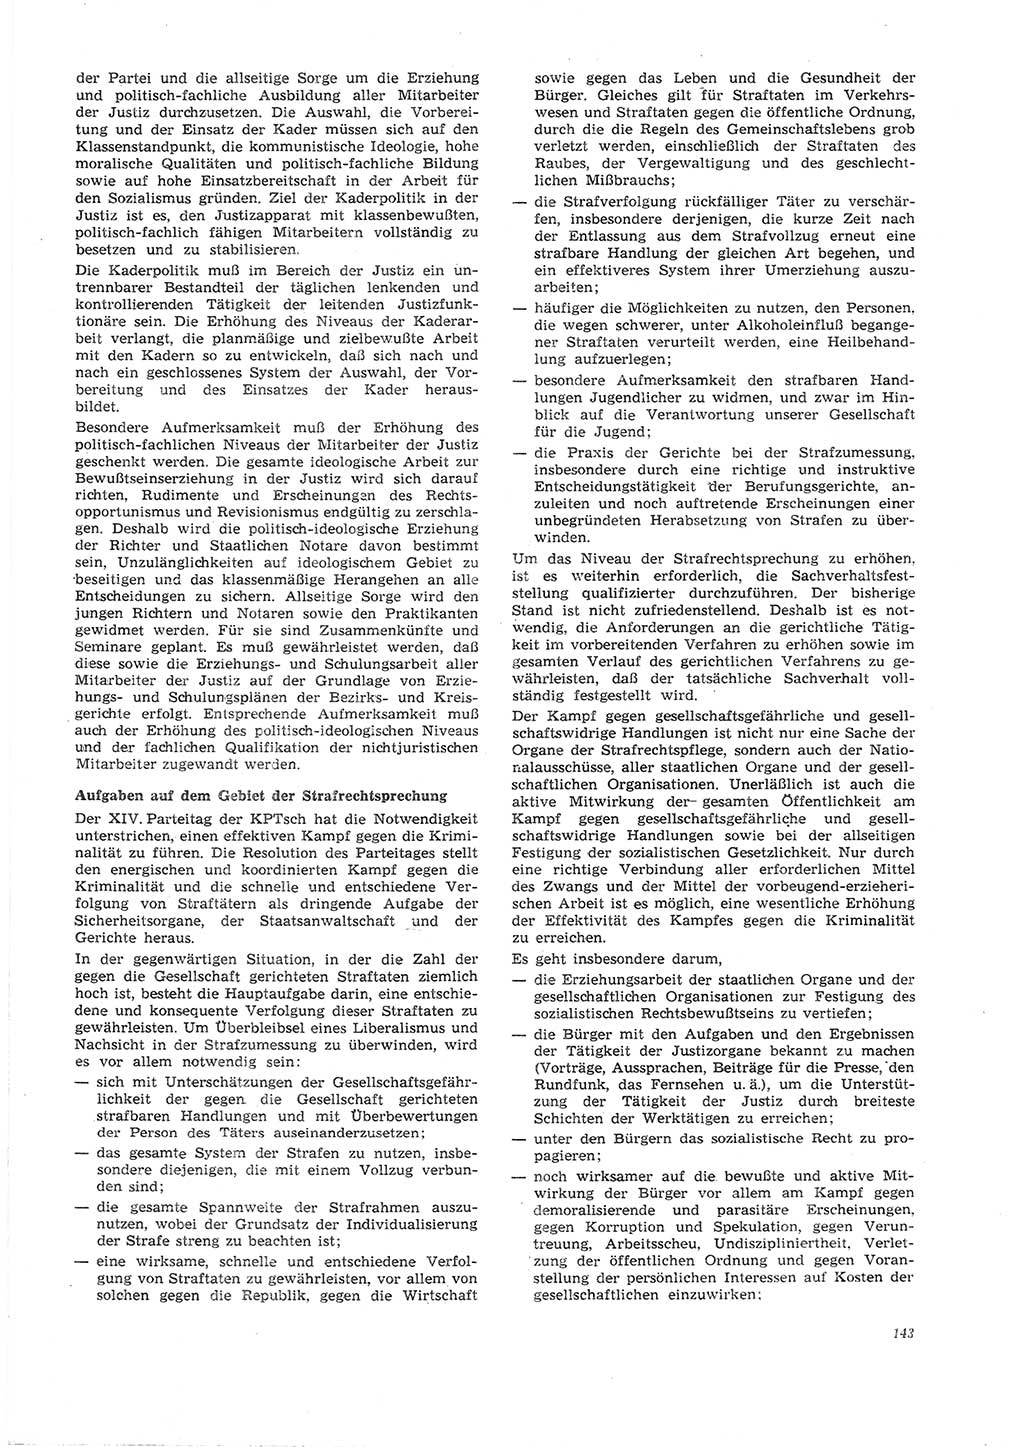 Neue Justiz (NJ), Zeitschrift für Recht und Rechtswissenschaft [Deutsche Demokratische Republik (DDR)], 26. Jahrgang 1972, Seite 143 (NJ DDR 1972, S. 143)